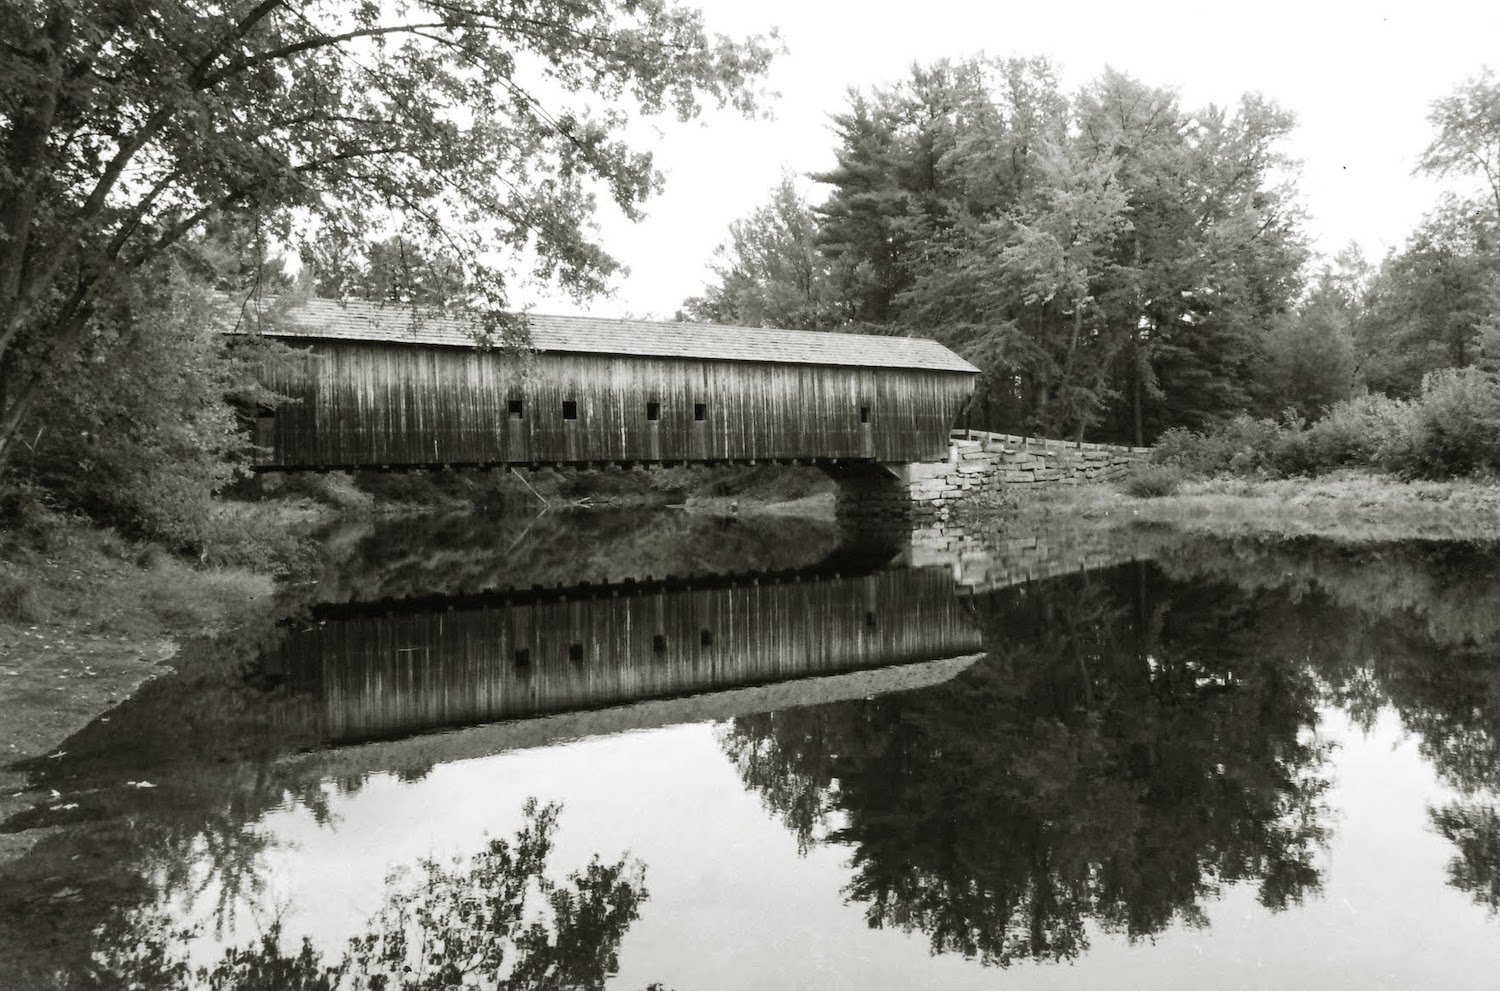   Mark T. Brophy,   Hemlock Bridge , infrared, 35mm, 8x10 